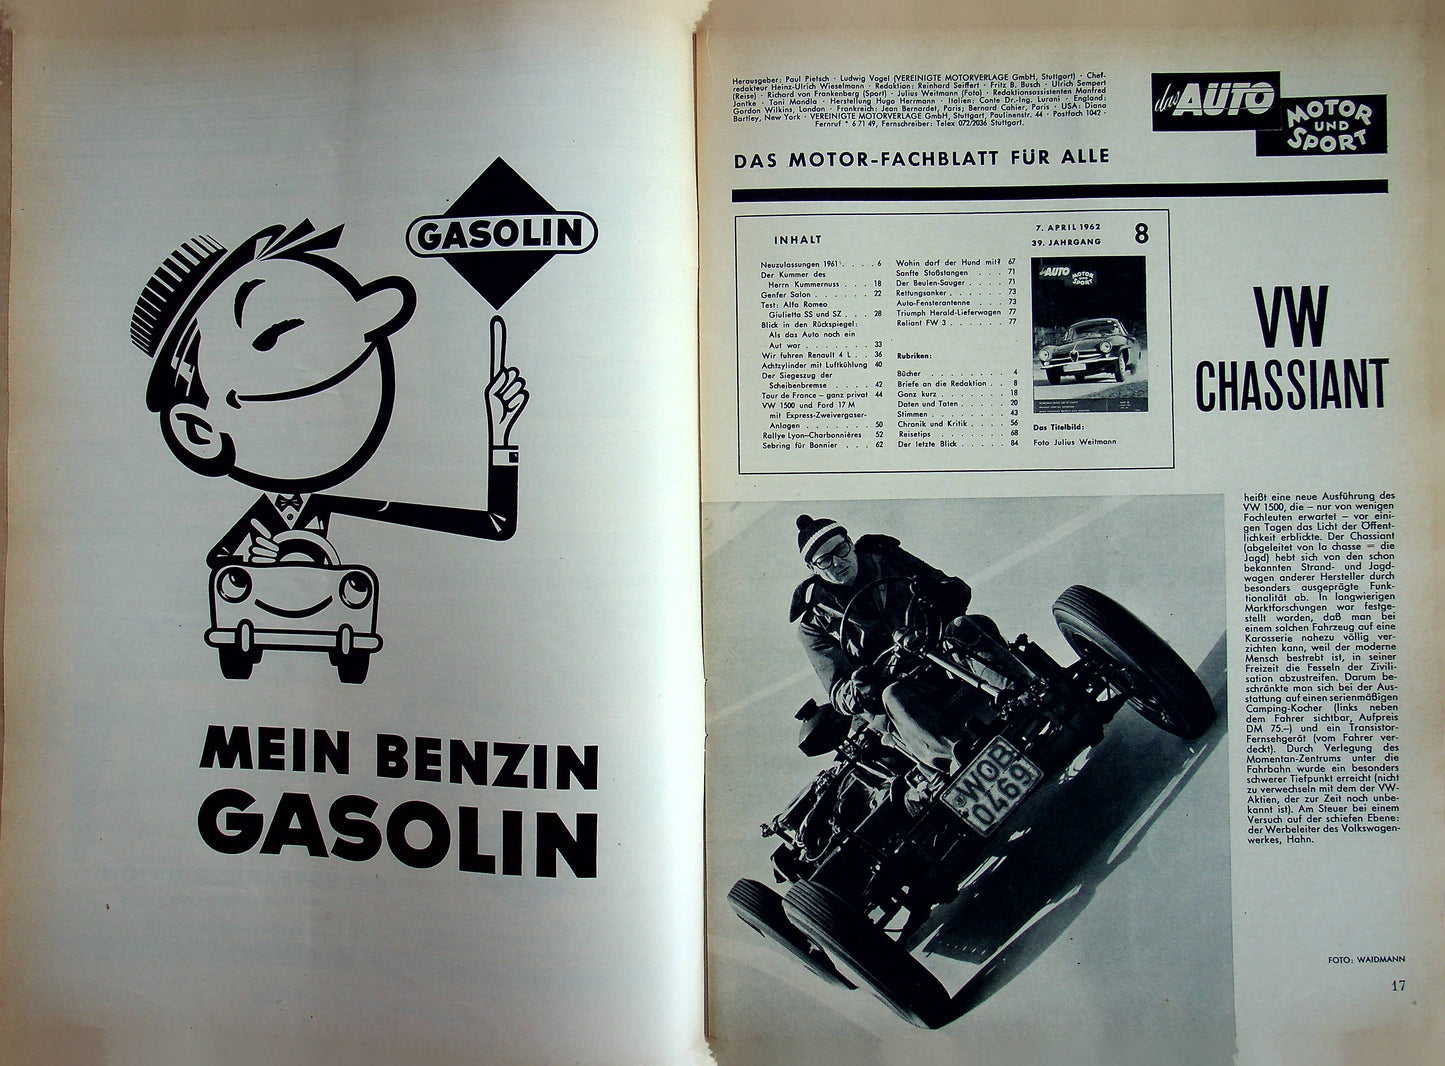 Auto Motor und Sport 08/1962